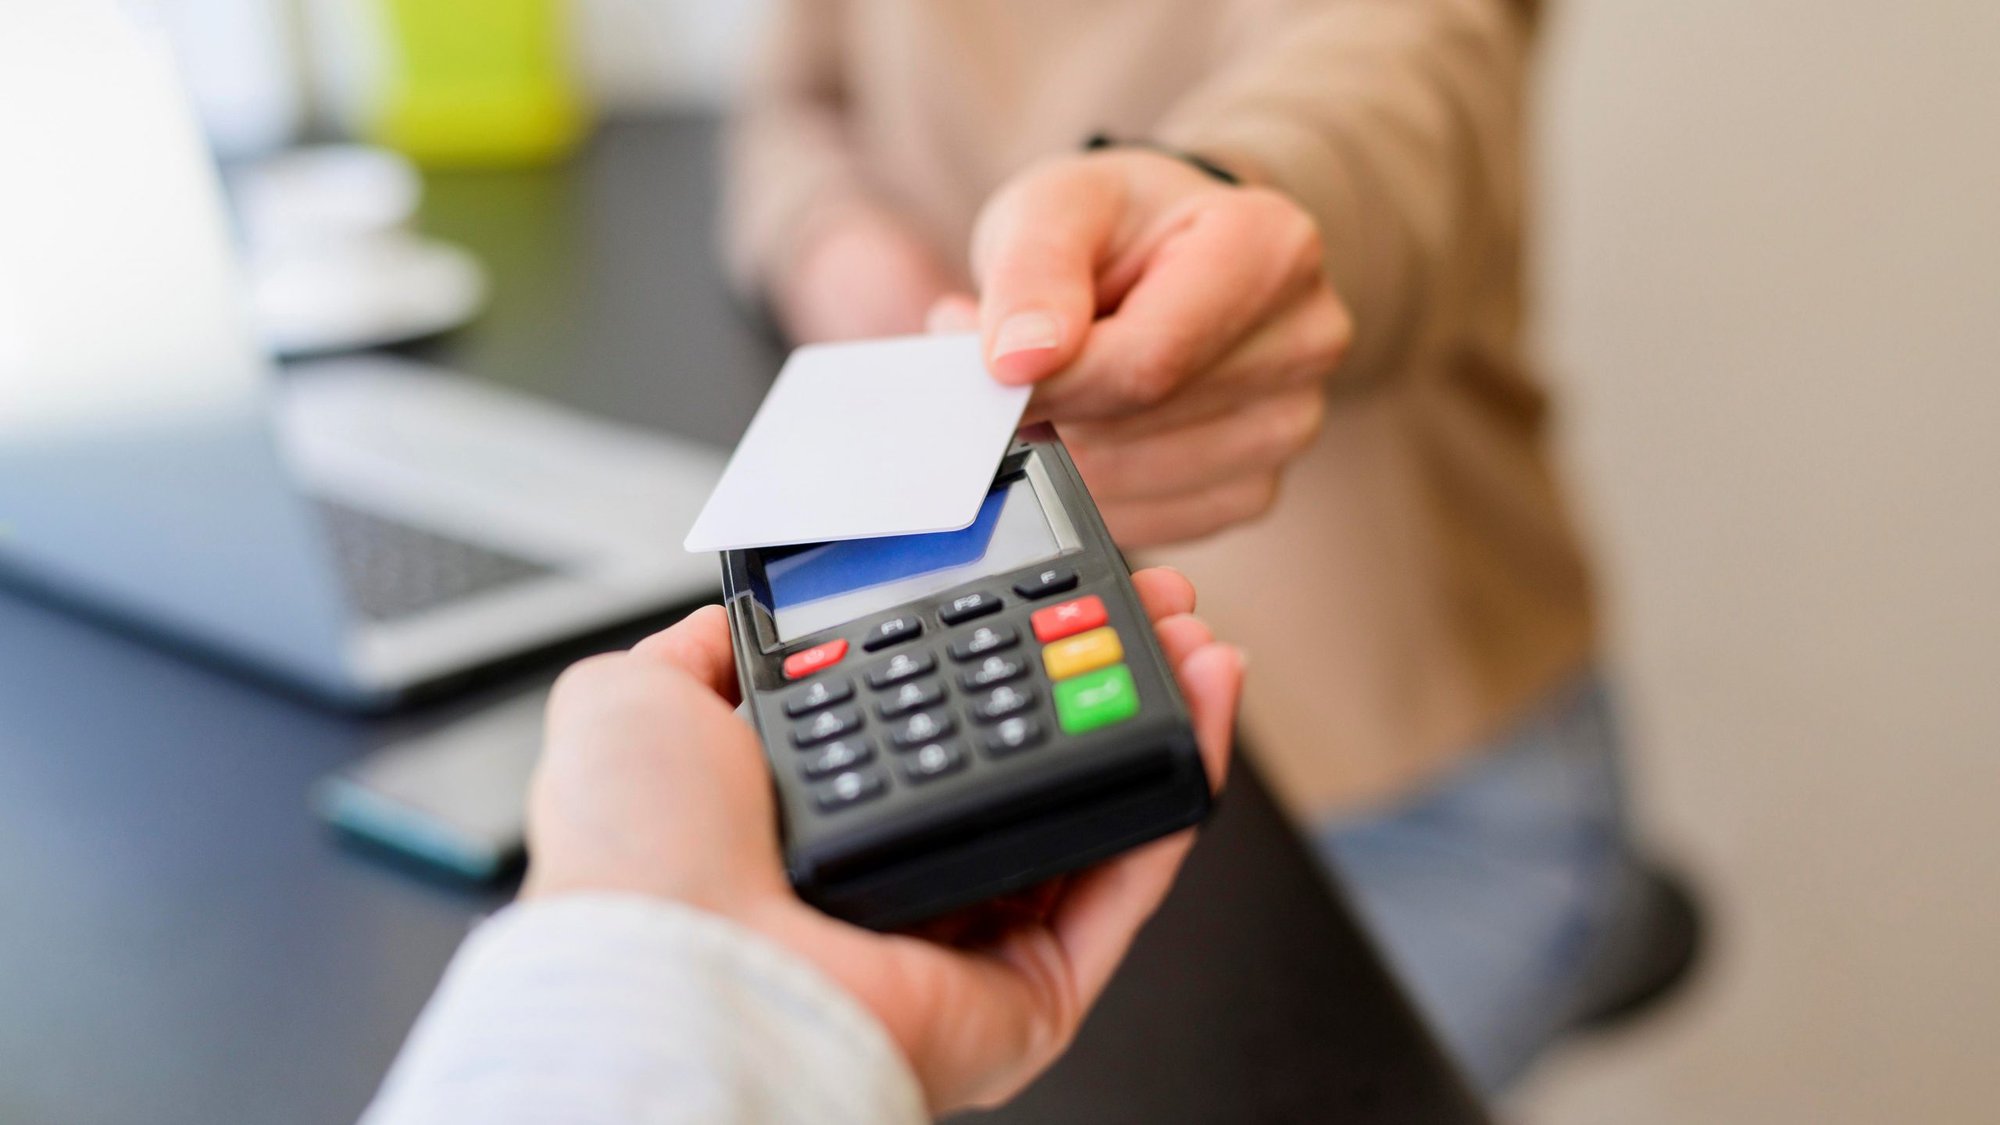 Làm thế nào để sử dụng thẻ tín dụng với tâm lý thẻ ghi nợ? - Ảnh 2.